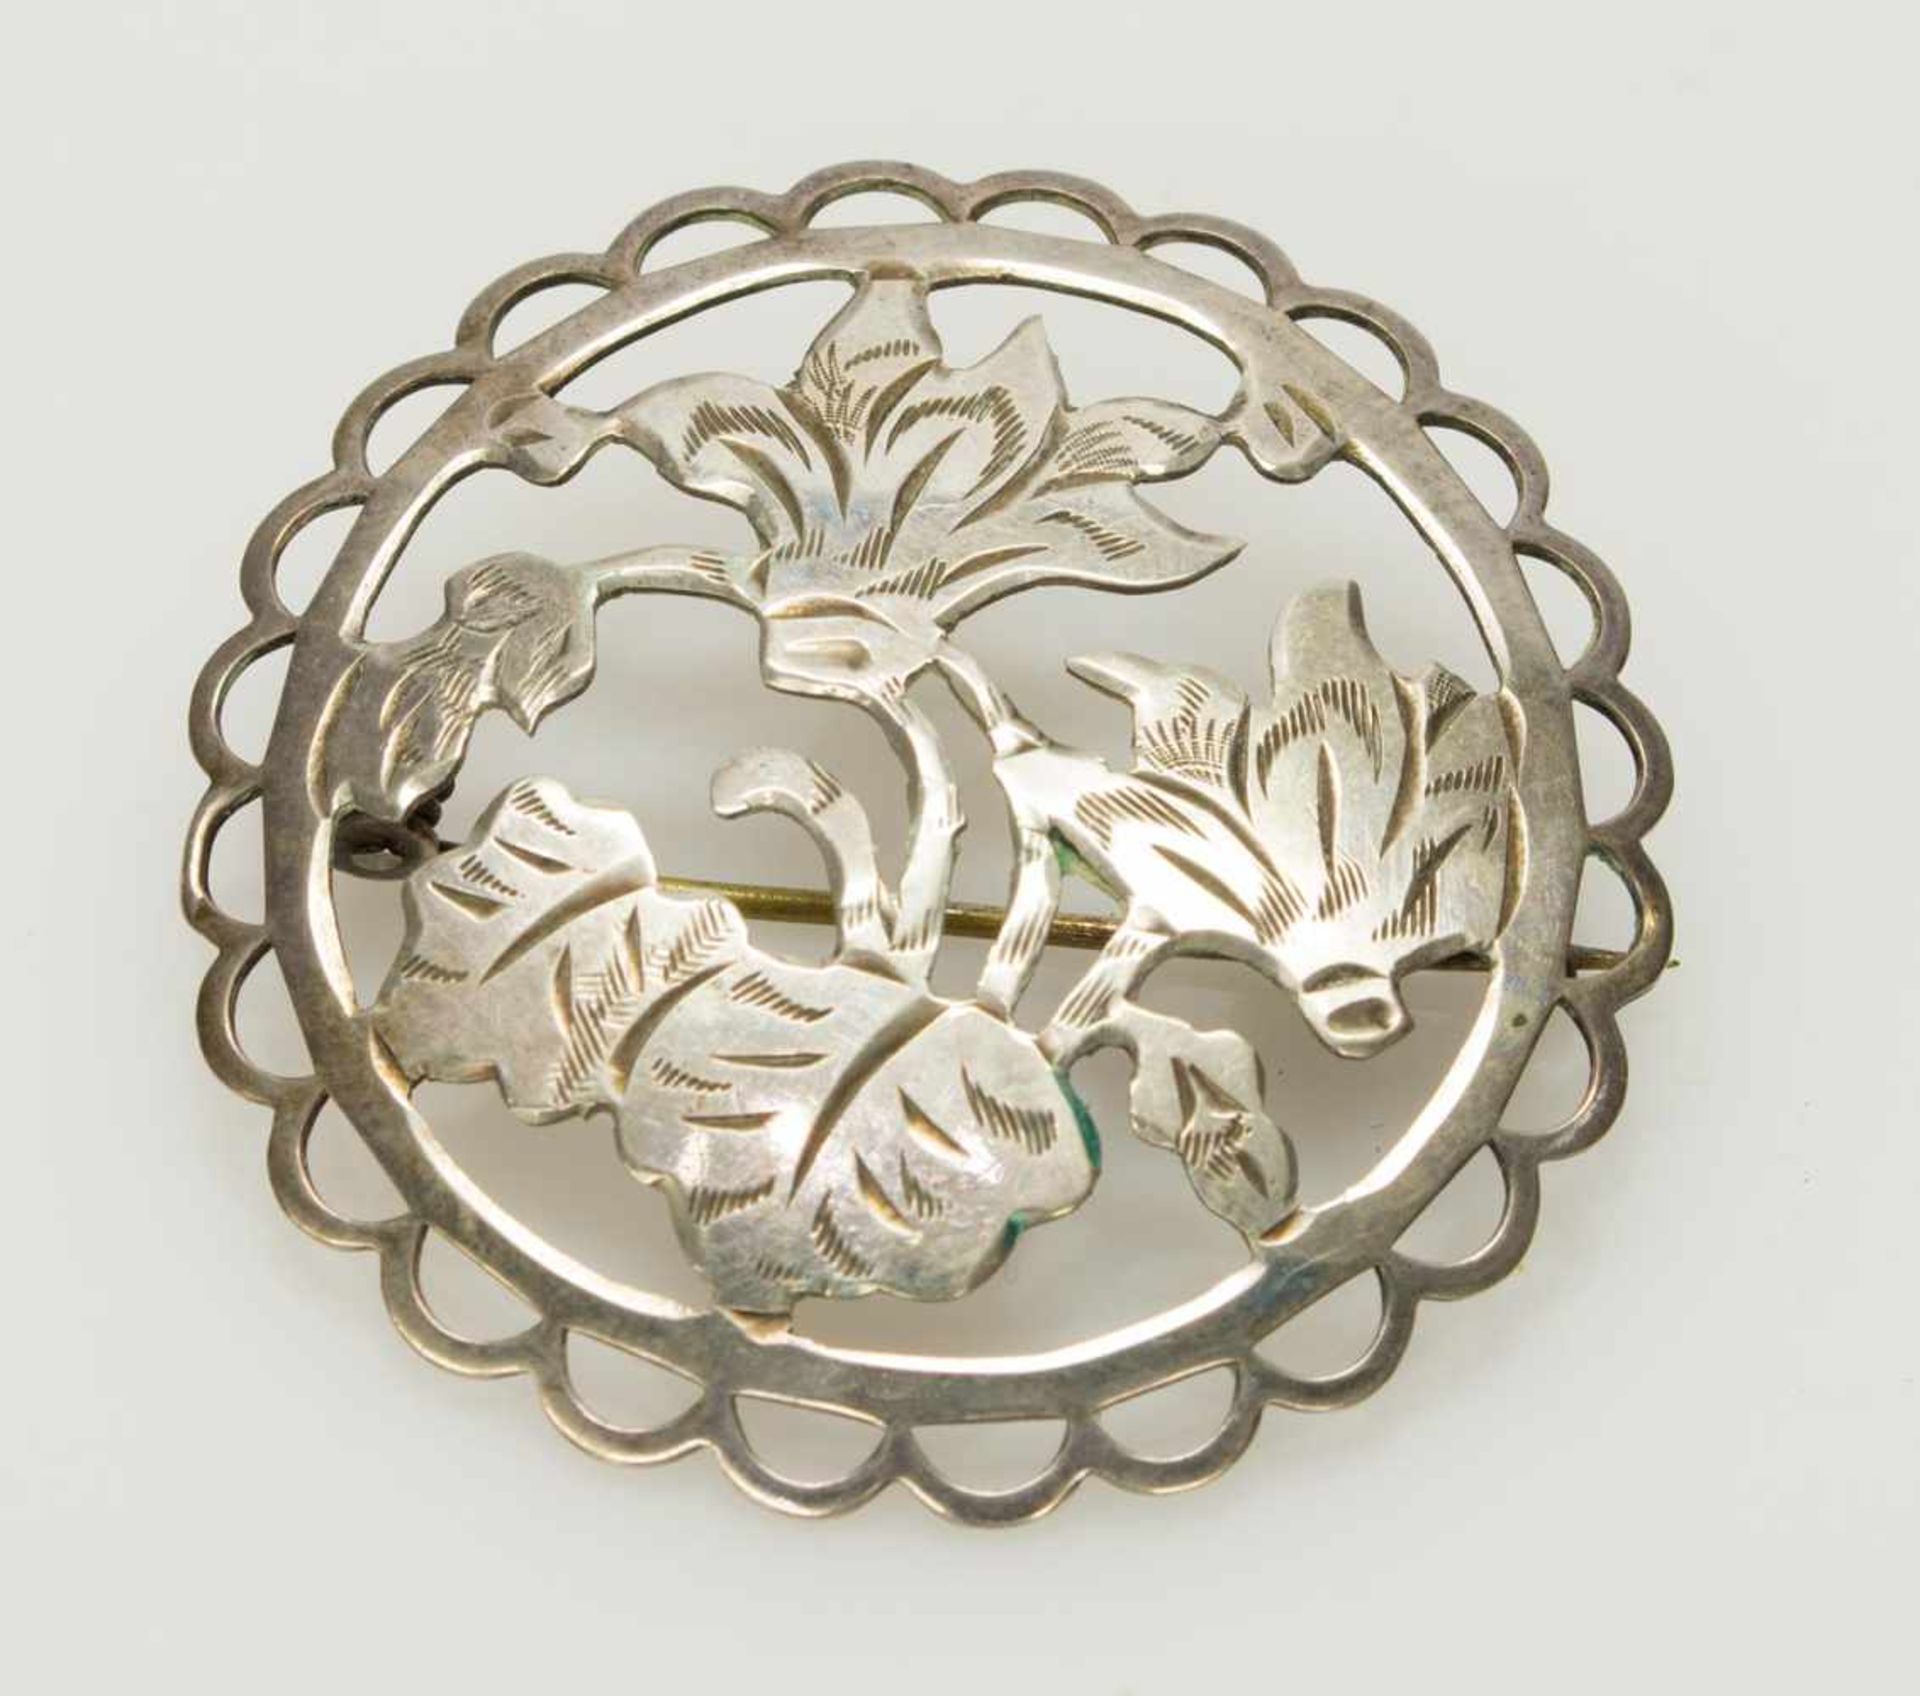 Brosche835er Silber, 4,85 g, runde durchbrochene Form mit handgesägtem Blumendekor, D. 4 cm